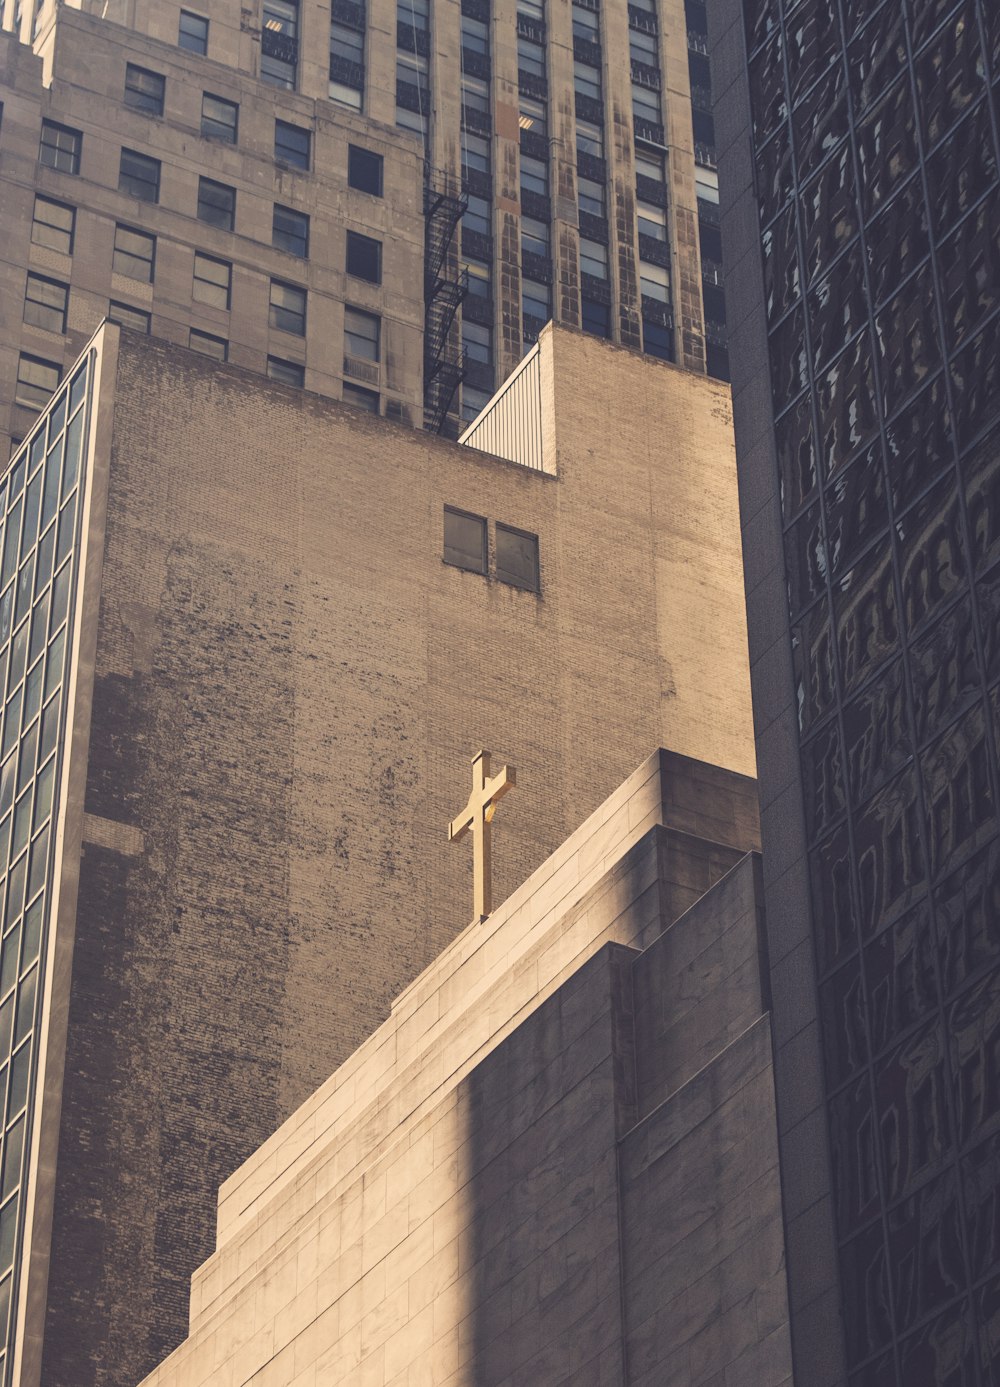 십자가가 있는 콘크리트 건물의 낮은 각도 사진